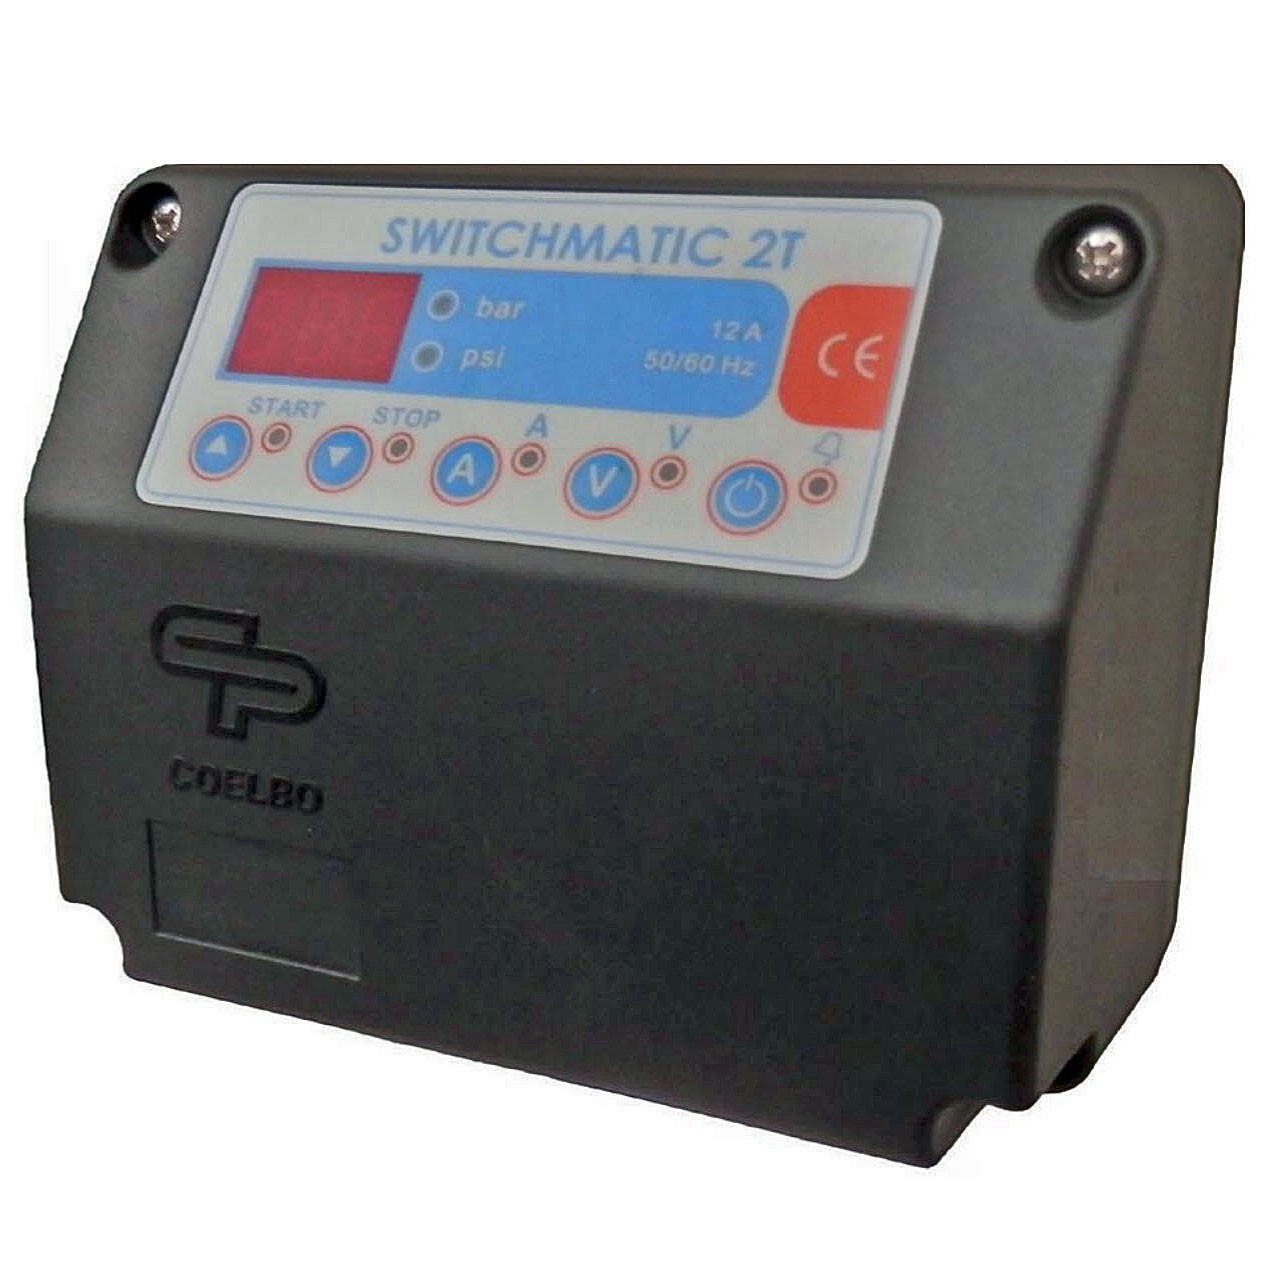 COELBO SWITCHMATIC 2T, elektronický tlakový spínač pro 3f čerpadla s digitálním manometrem